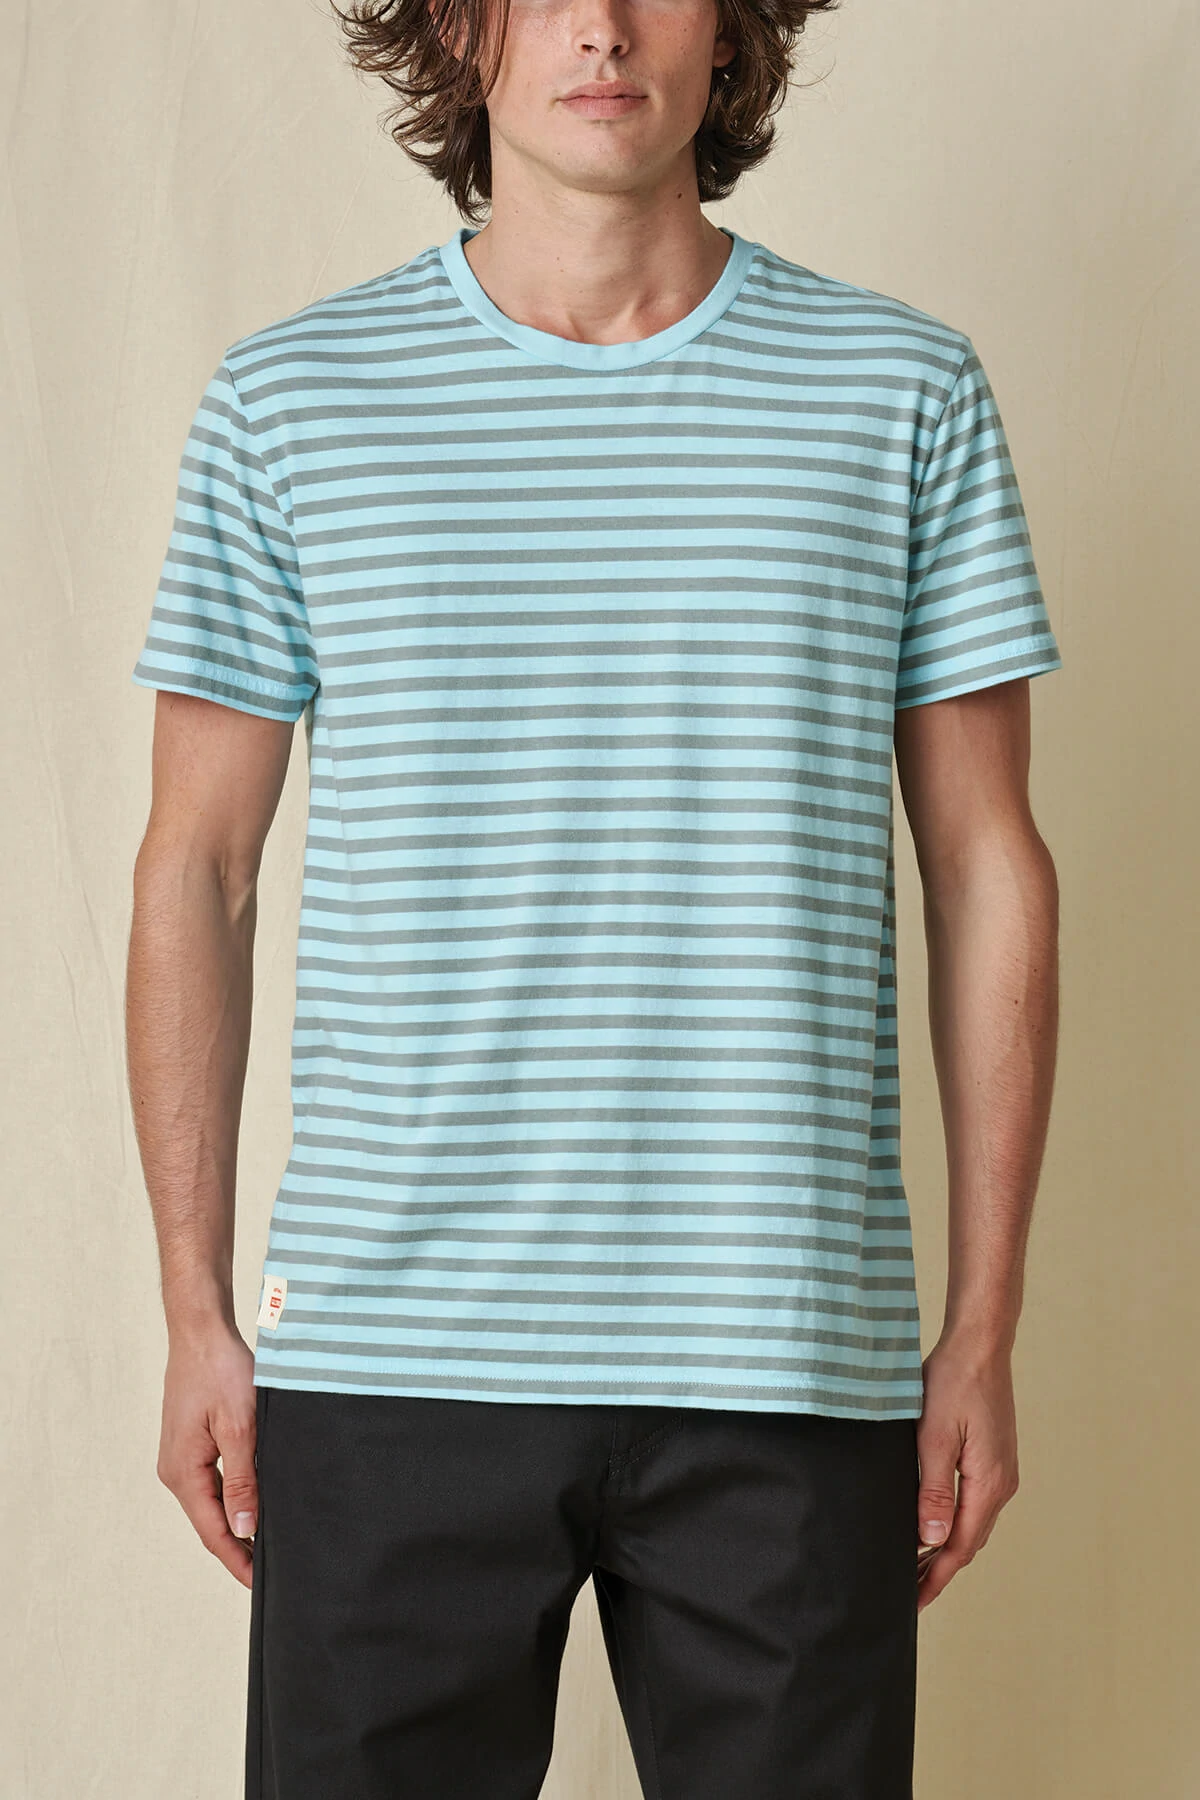 Globe Horizon Striped T-shirt marine